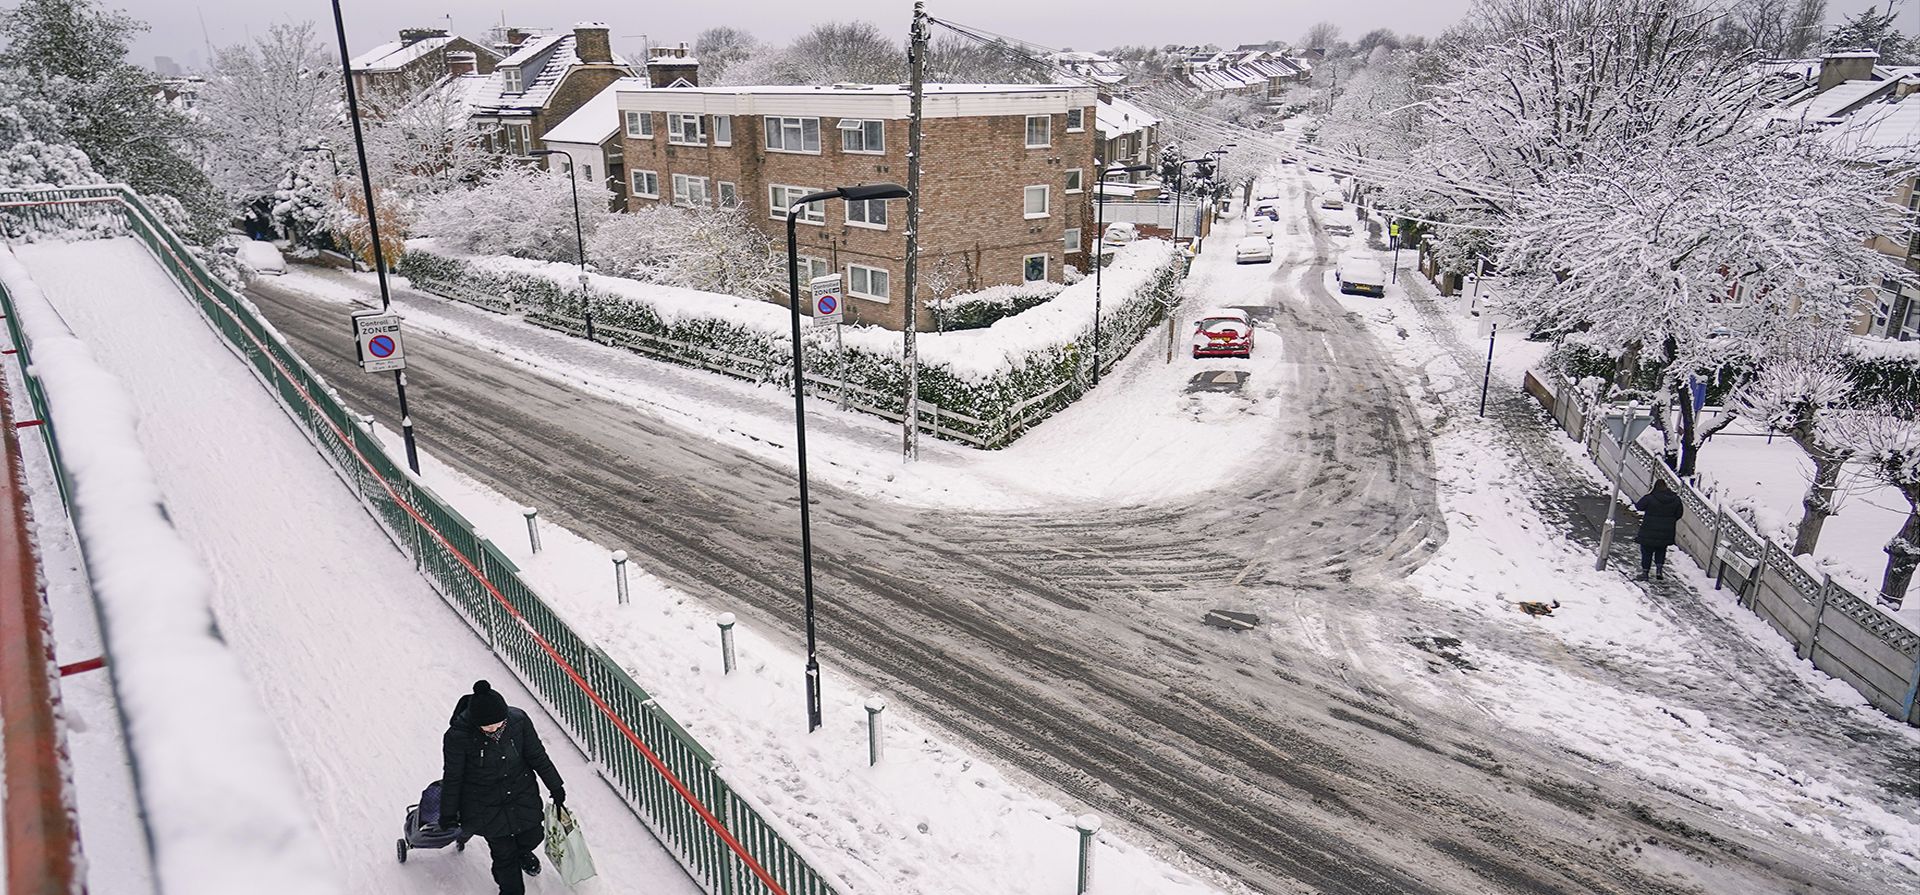 Una mujer tira de un carrito de compras en una zona residencial cubierta de nieve en Leytonstone, en Londres, el lunes 12 de diciembre de 2022. La nieve y el hielo han barrido partes del Reino Unido, con condiciones invernales frías que continuarán durante días. (Foto AP/Alberto Pezzali)